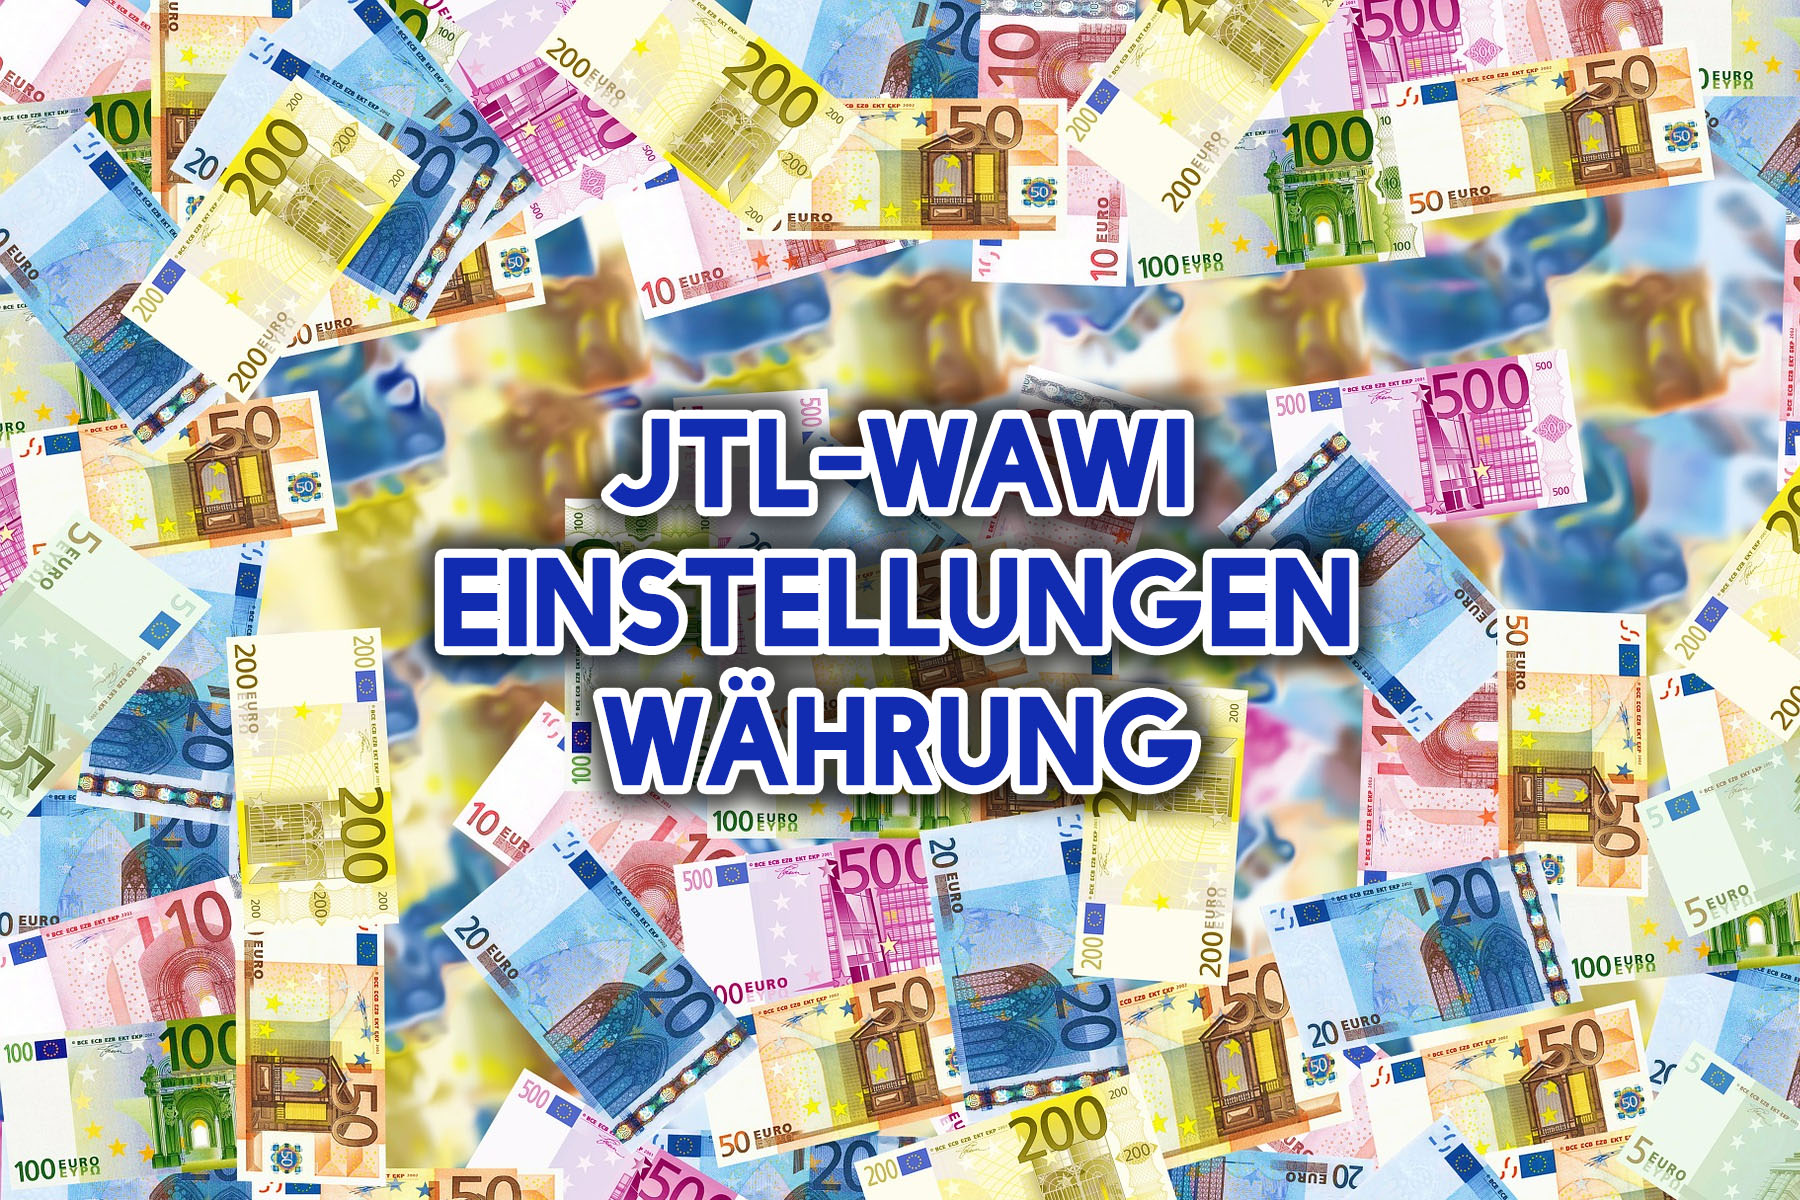 JTL-Wawi Einstellungen Währung